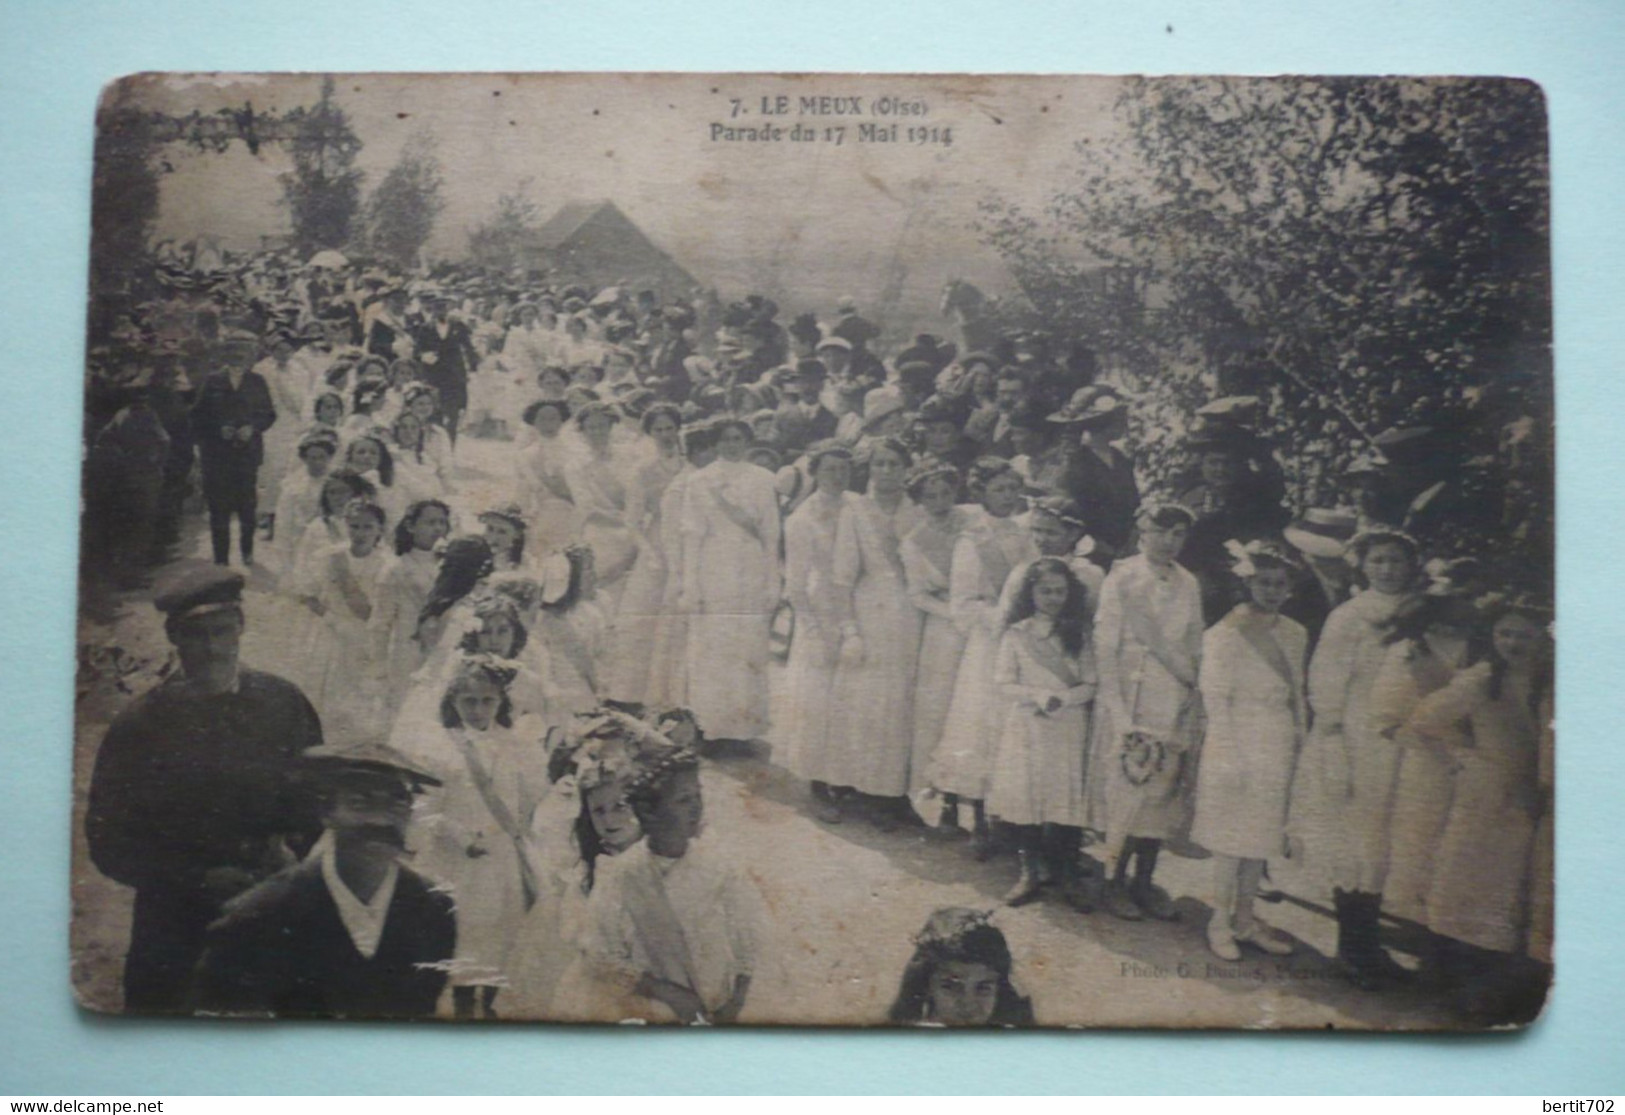 60 - LE MEUX - PARADE DU 17 MAI 1914 - Bouquet Provincial - Tir à L'arc  - Groupe De Jeunes Filles Tout De Blanc Vêtues - Bogenschiessen